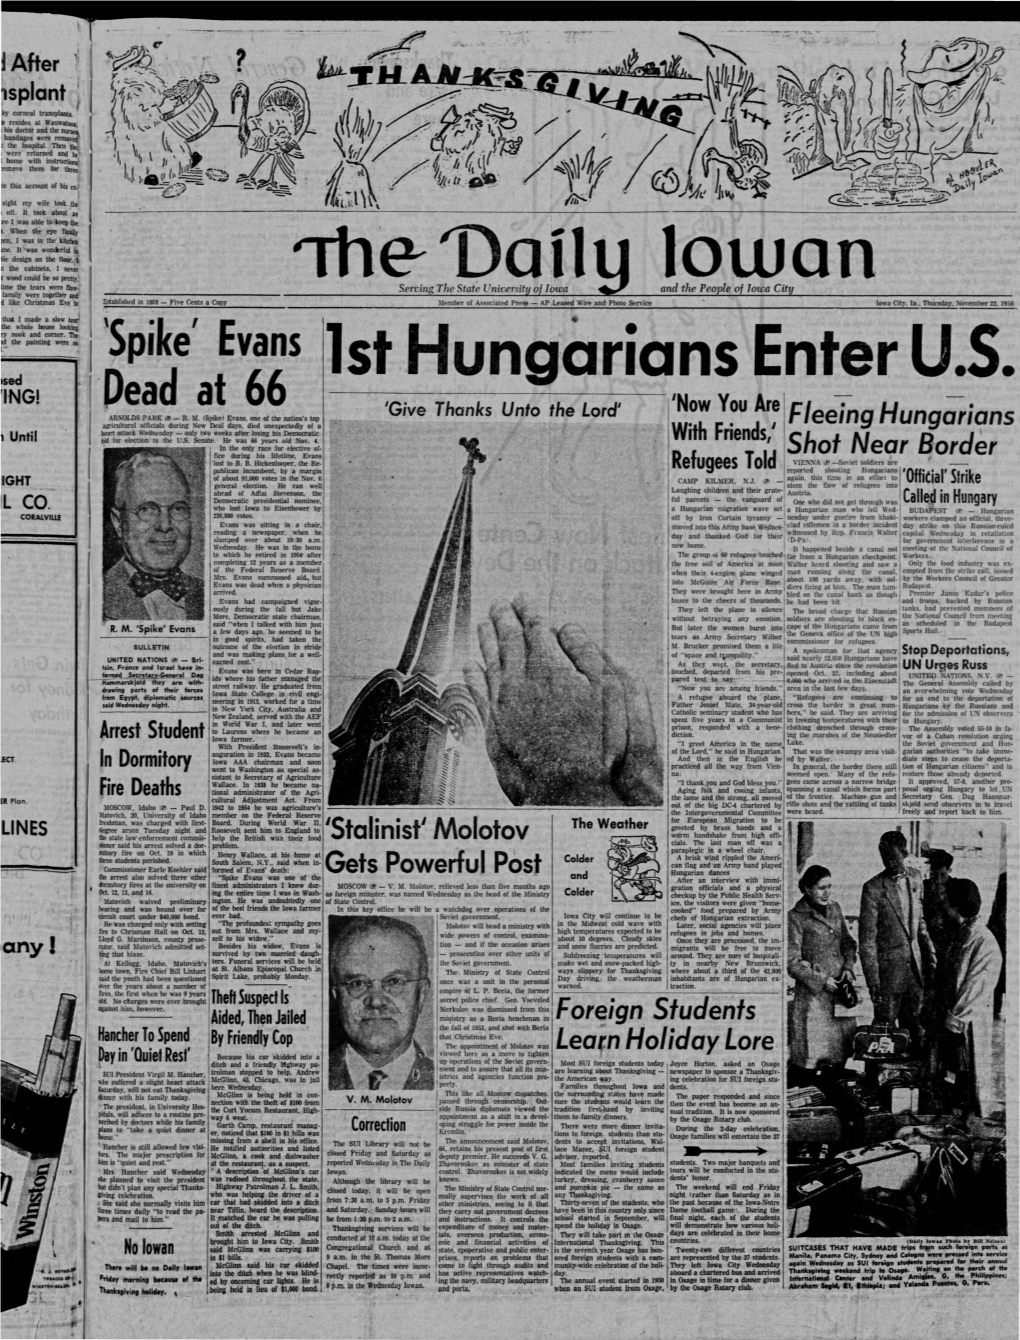 Daily Iowan (Iowa City, Iowa), 1956-11-22